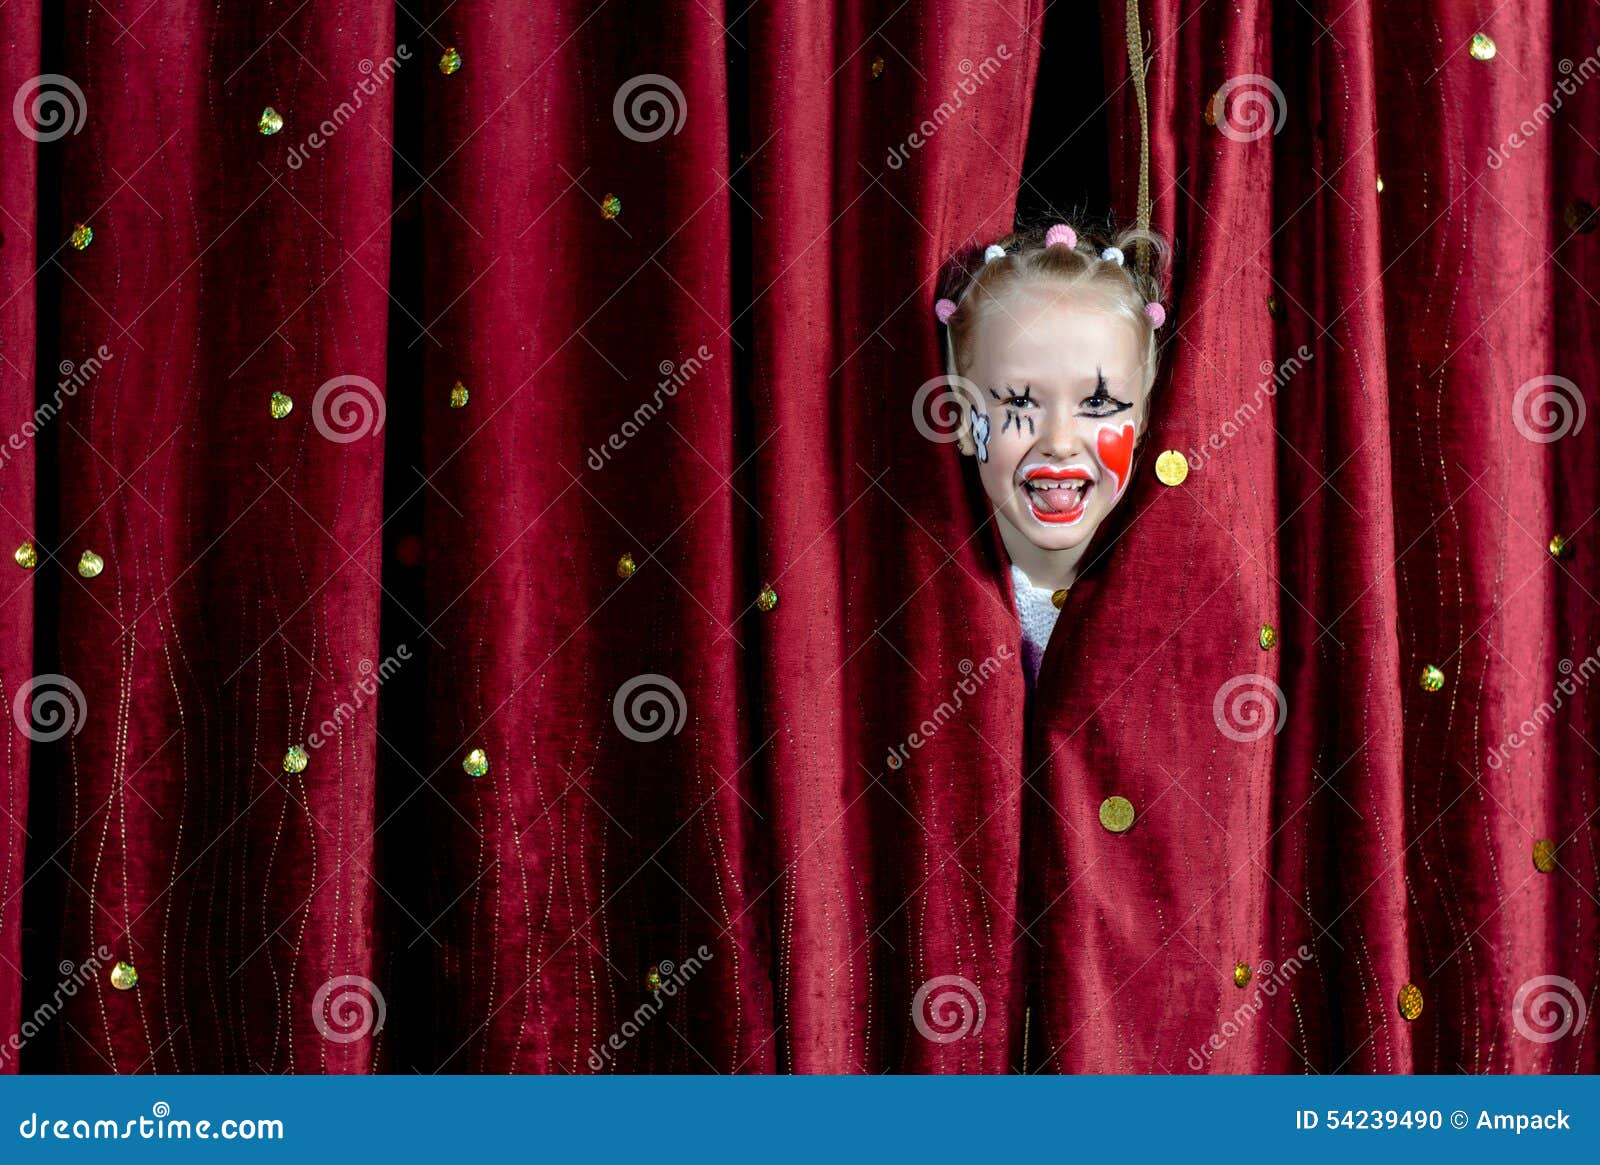 Girl Wearing Clown Makeup Peeking through Curtains Stock Photo - Image ...